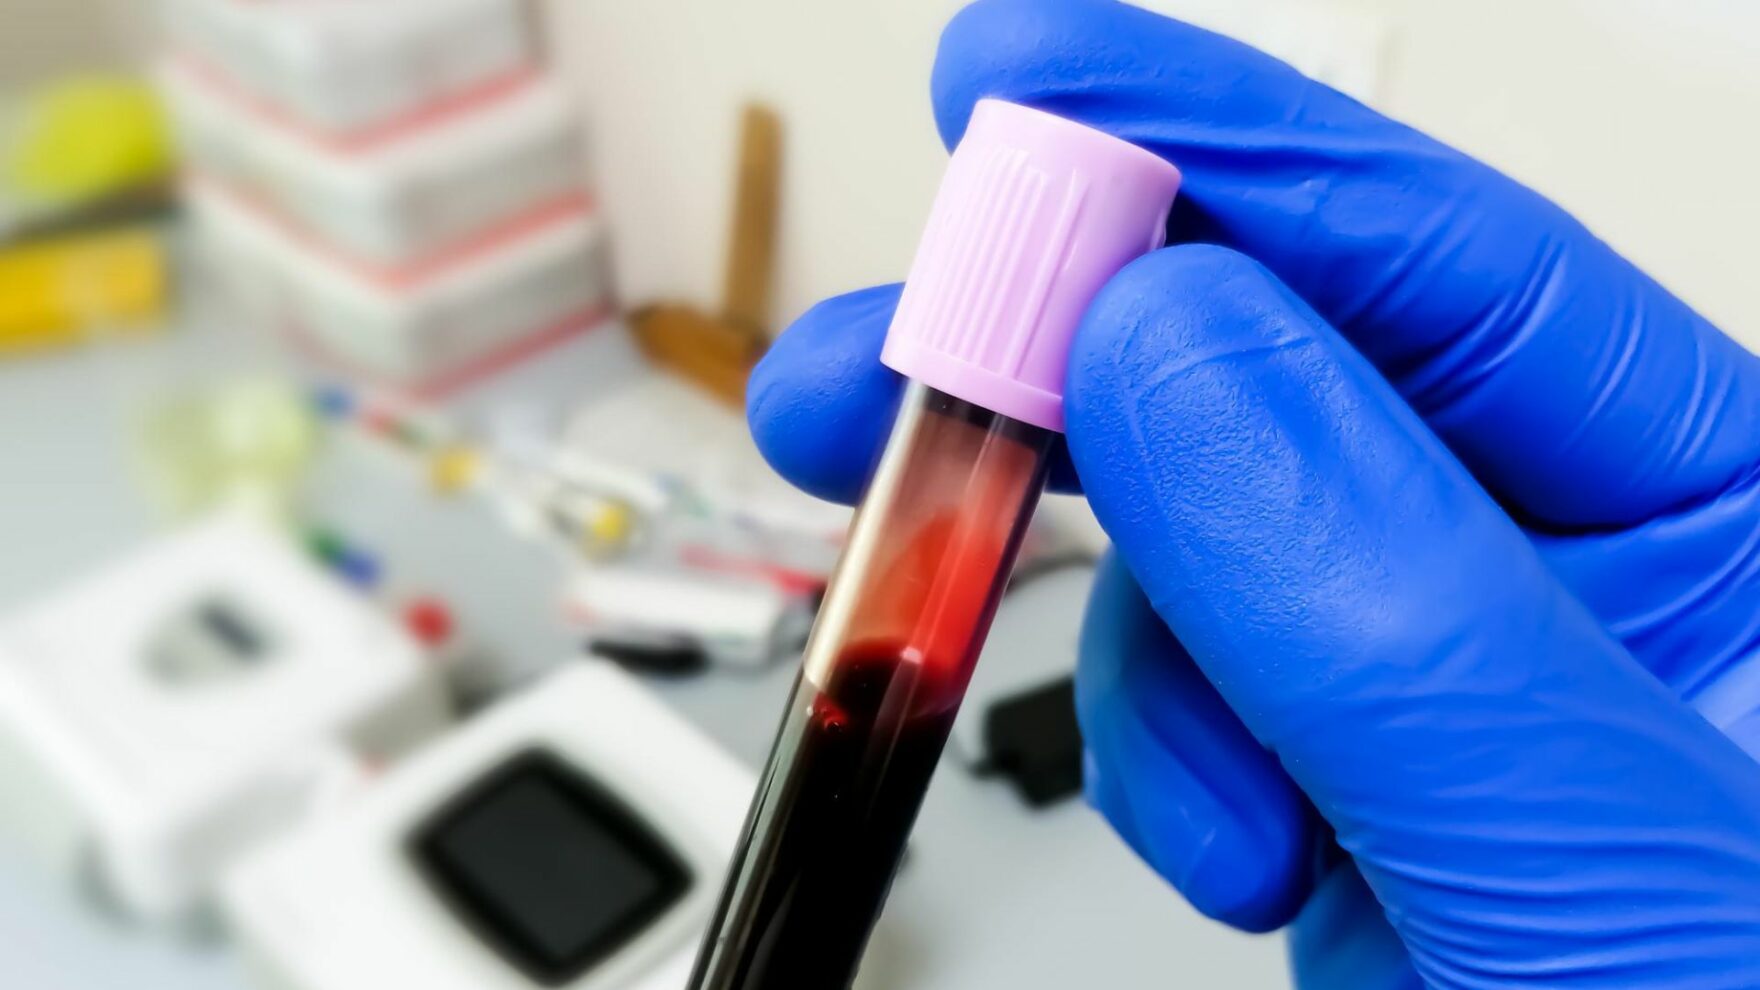 Diagnóstico da dengue: avaliação clínica e exames laboratoriais